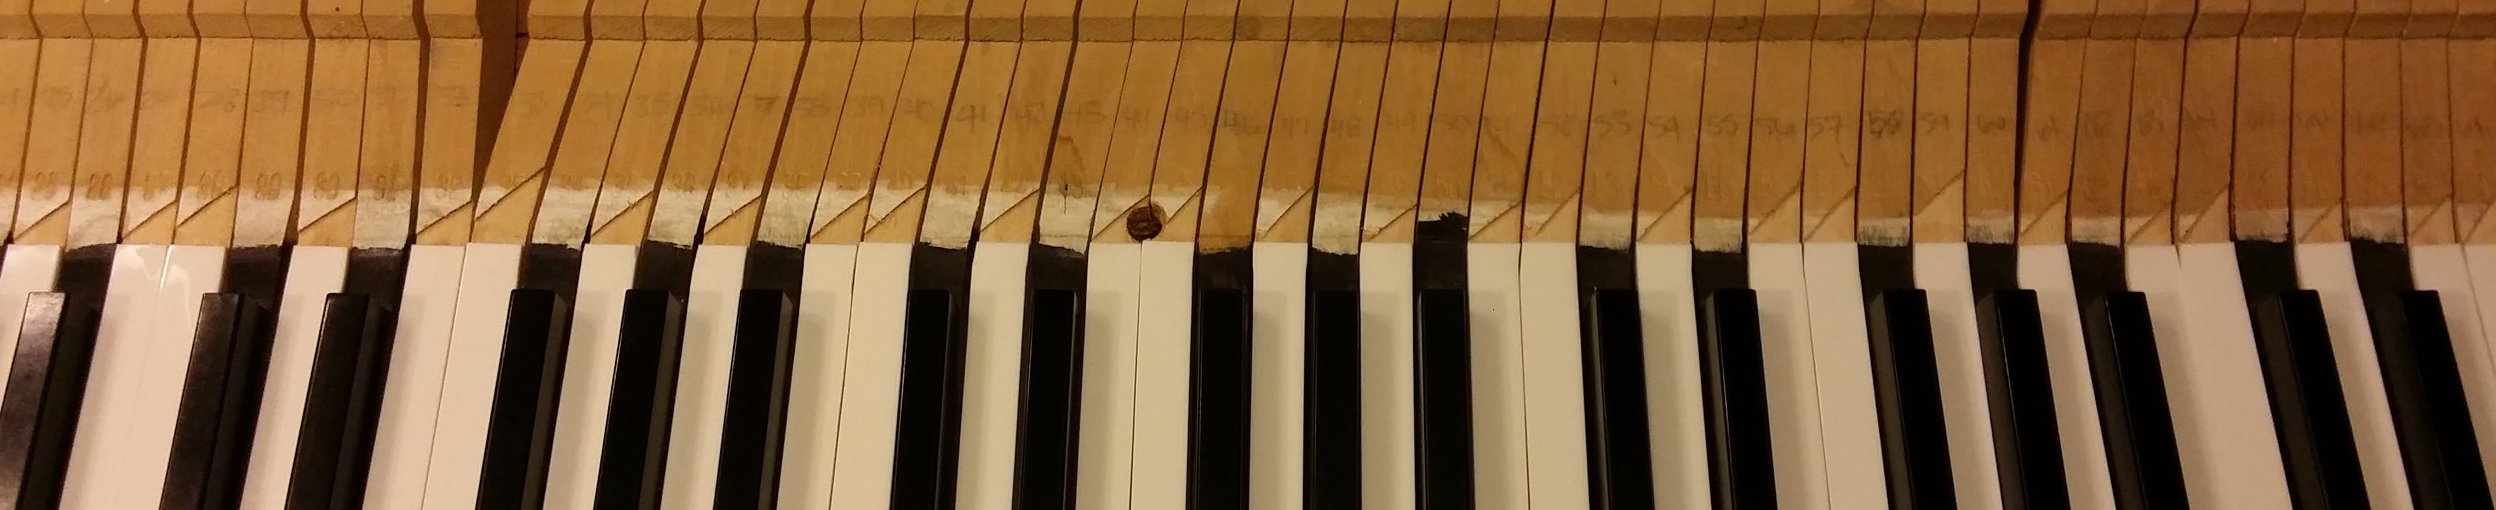 pianokeys.jpeg